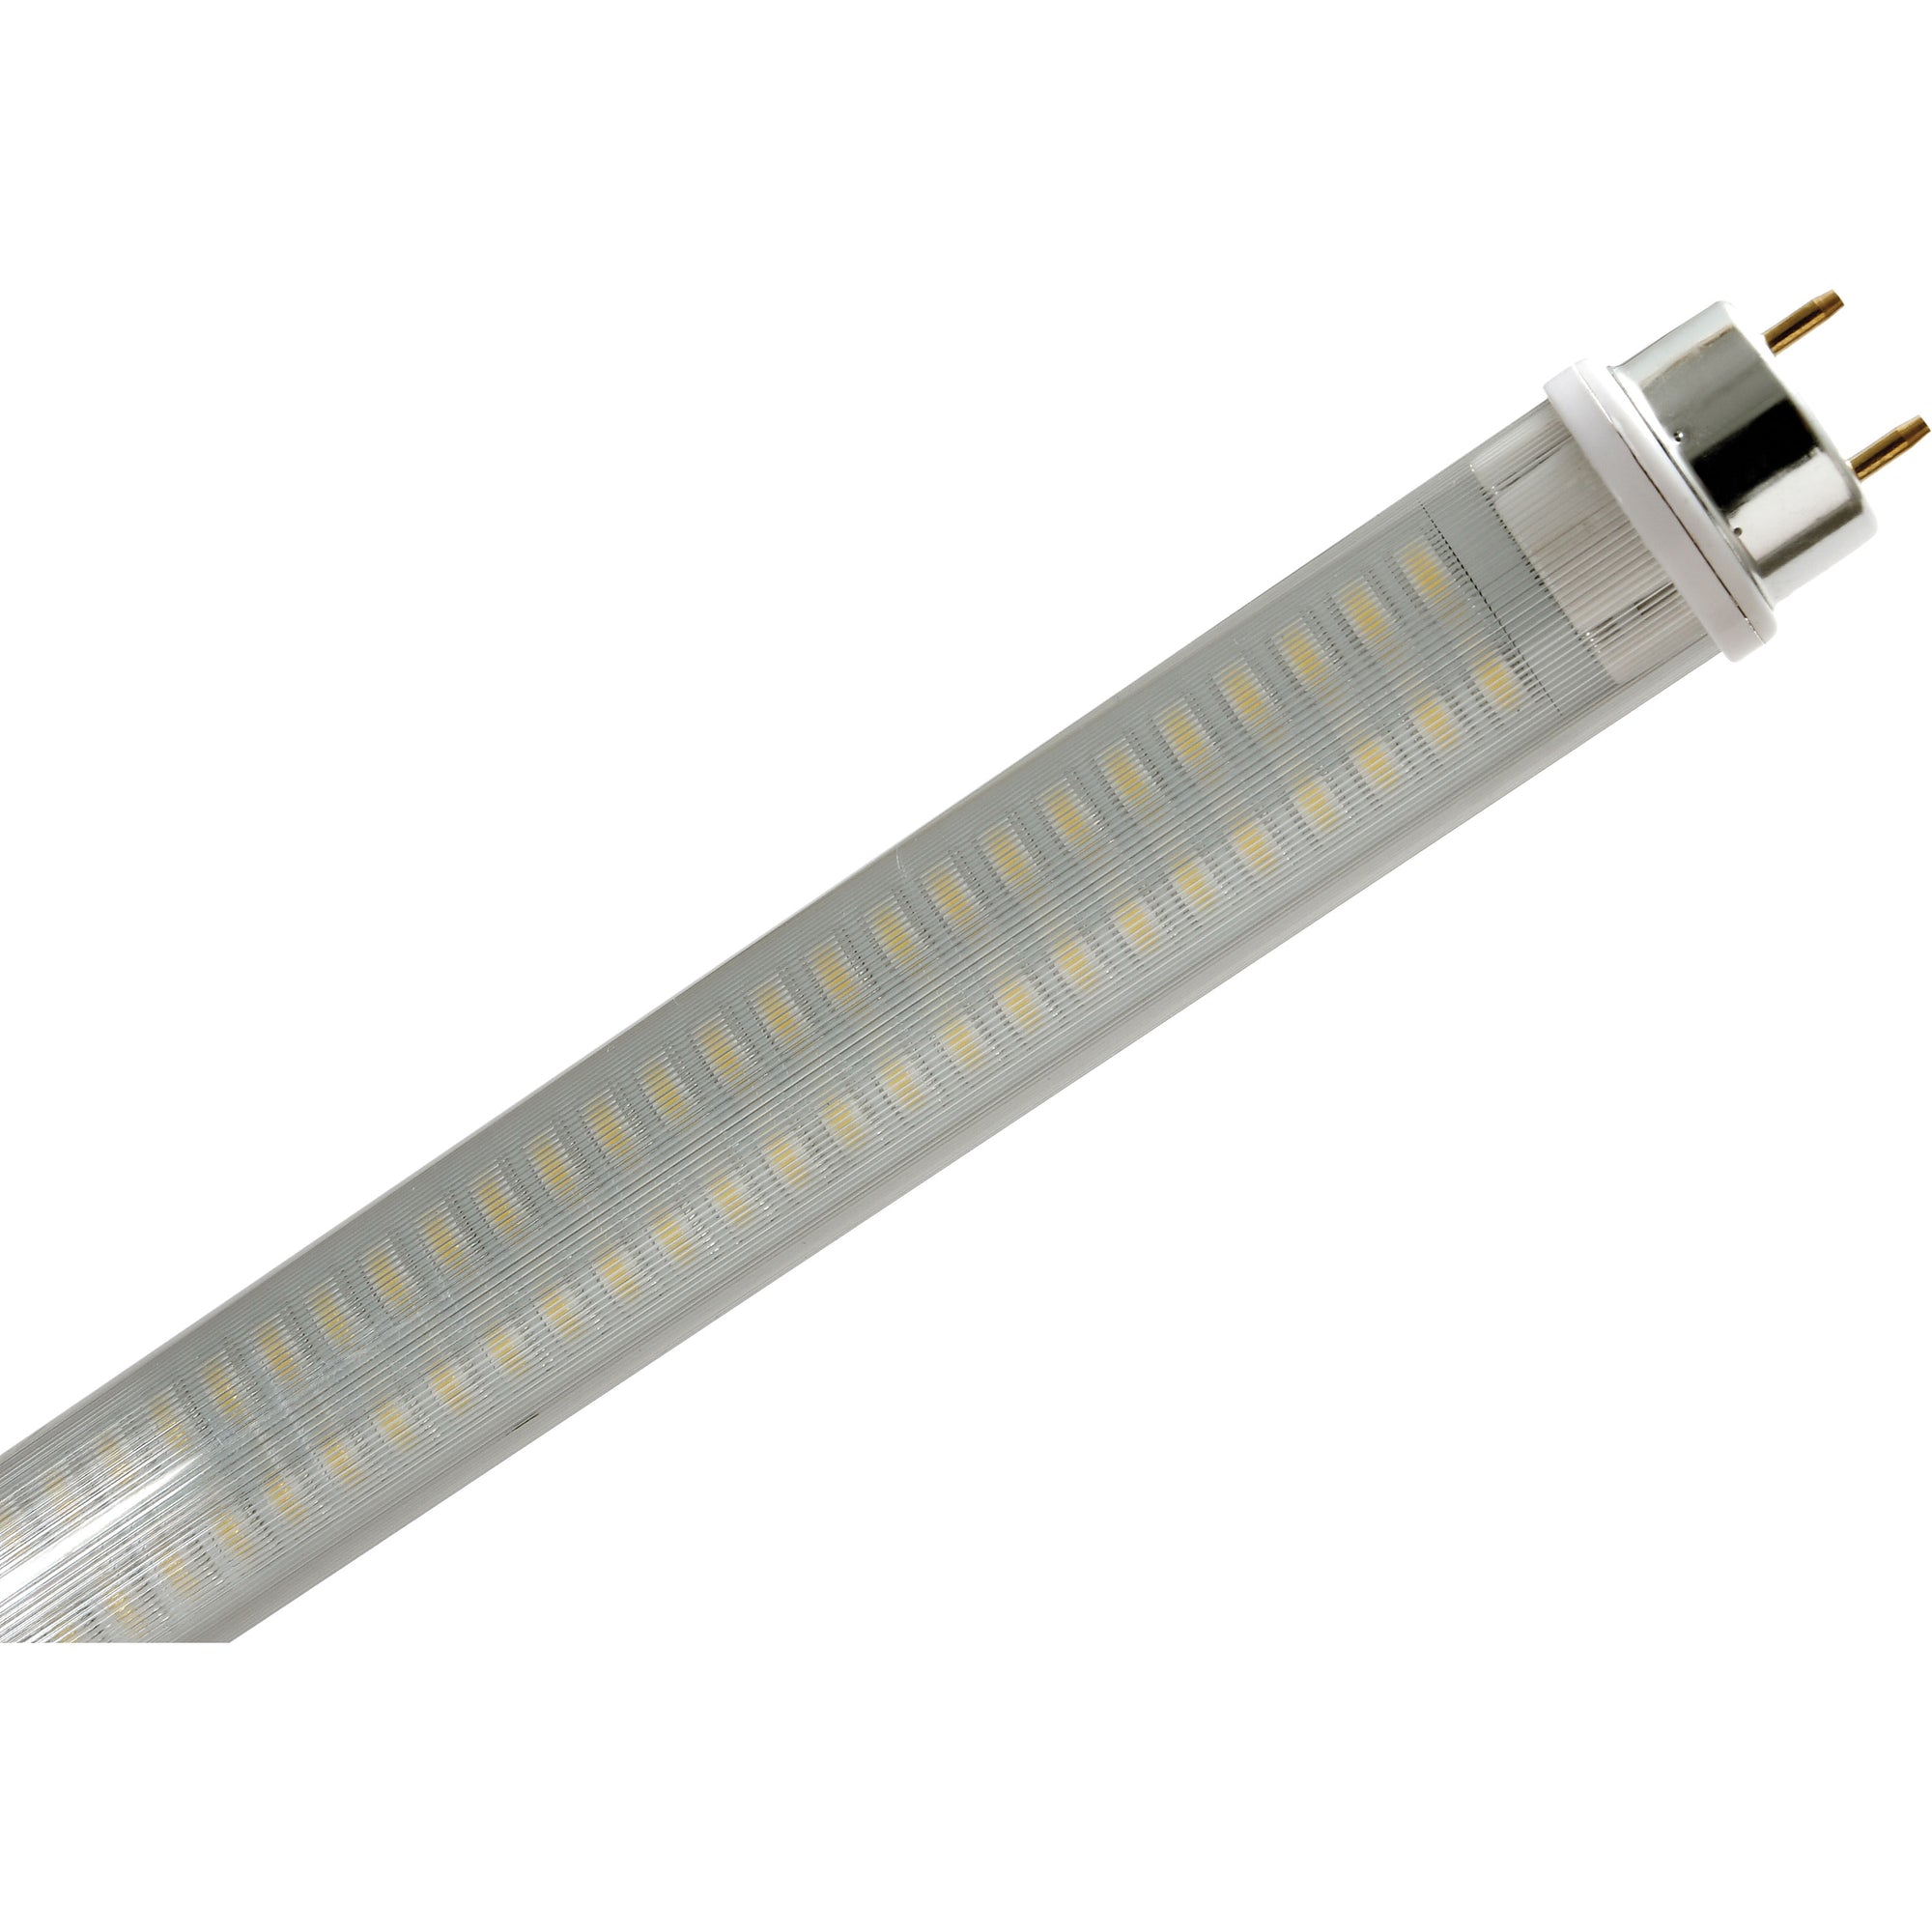 Ming's Mark 3528101 Green LongLife 12V LED 18" Light Tube with T8 Base - 500 Lumens, Natural White